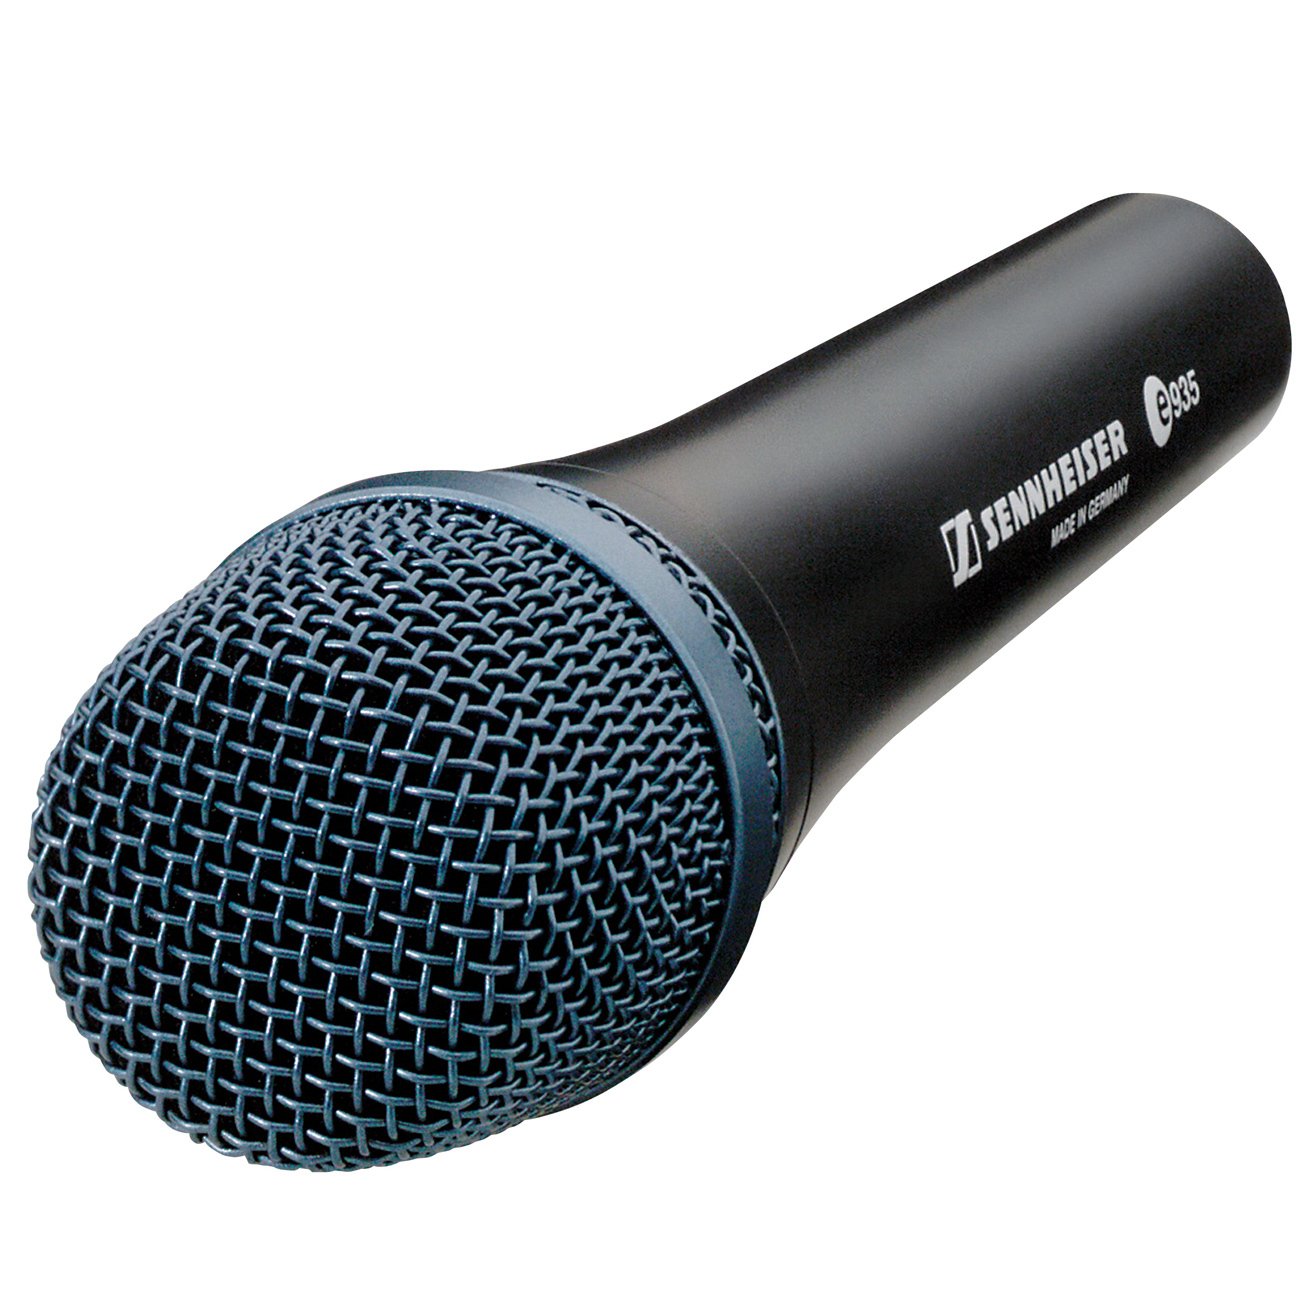 Sennheiser E935 Vocal Microphone